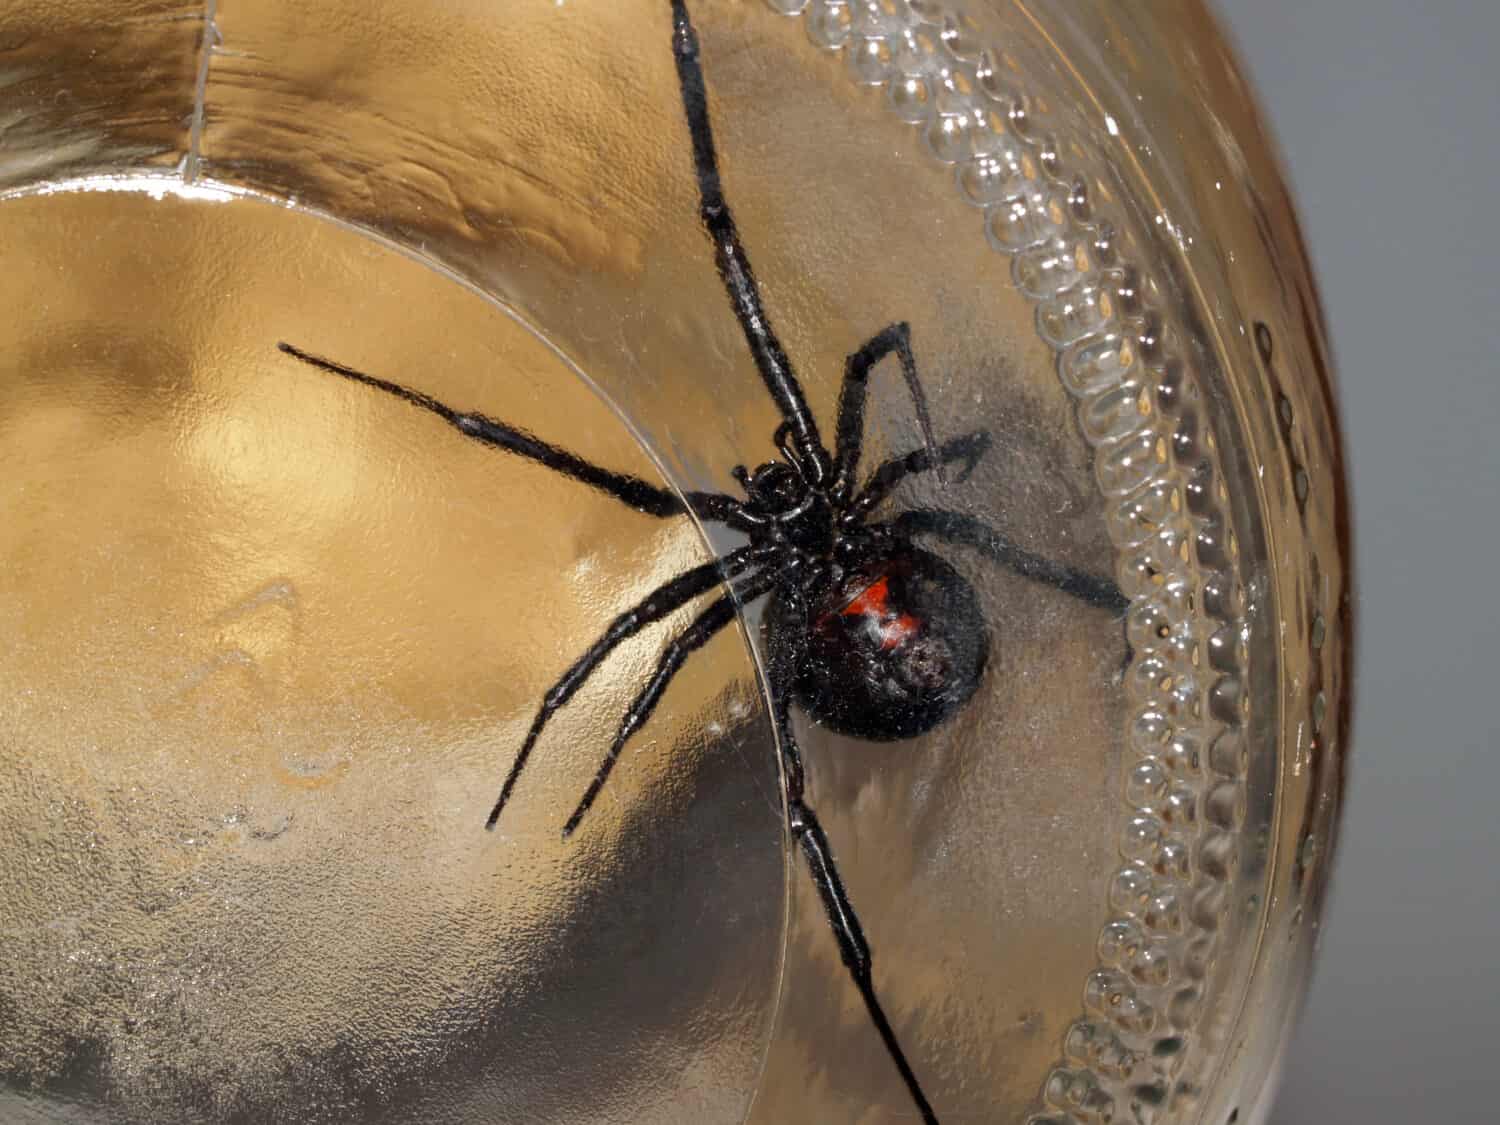 Black widow spider in glass jar belly